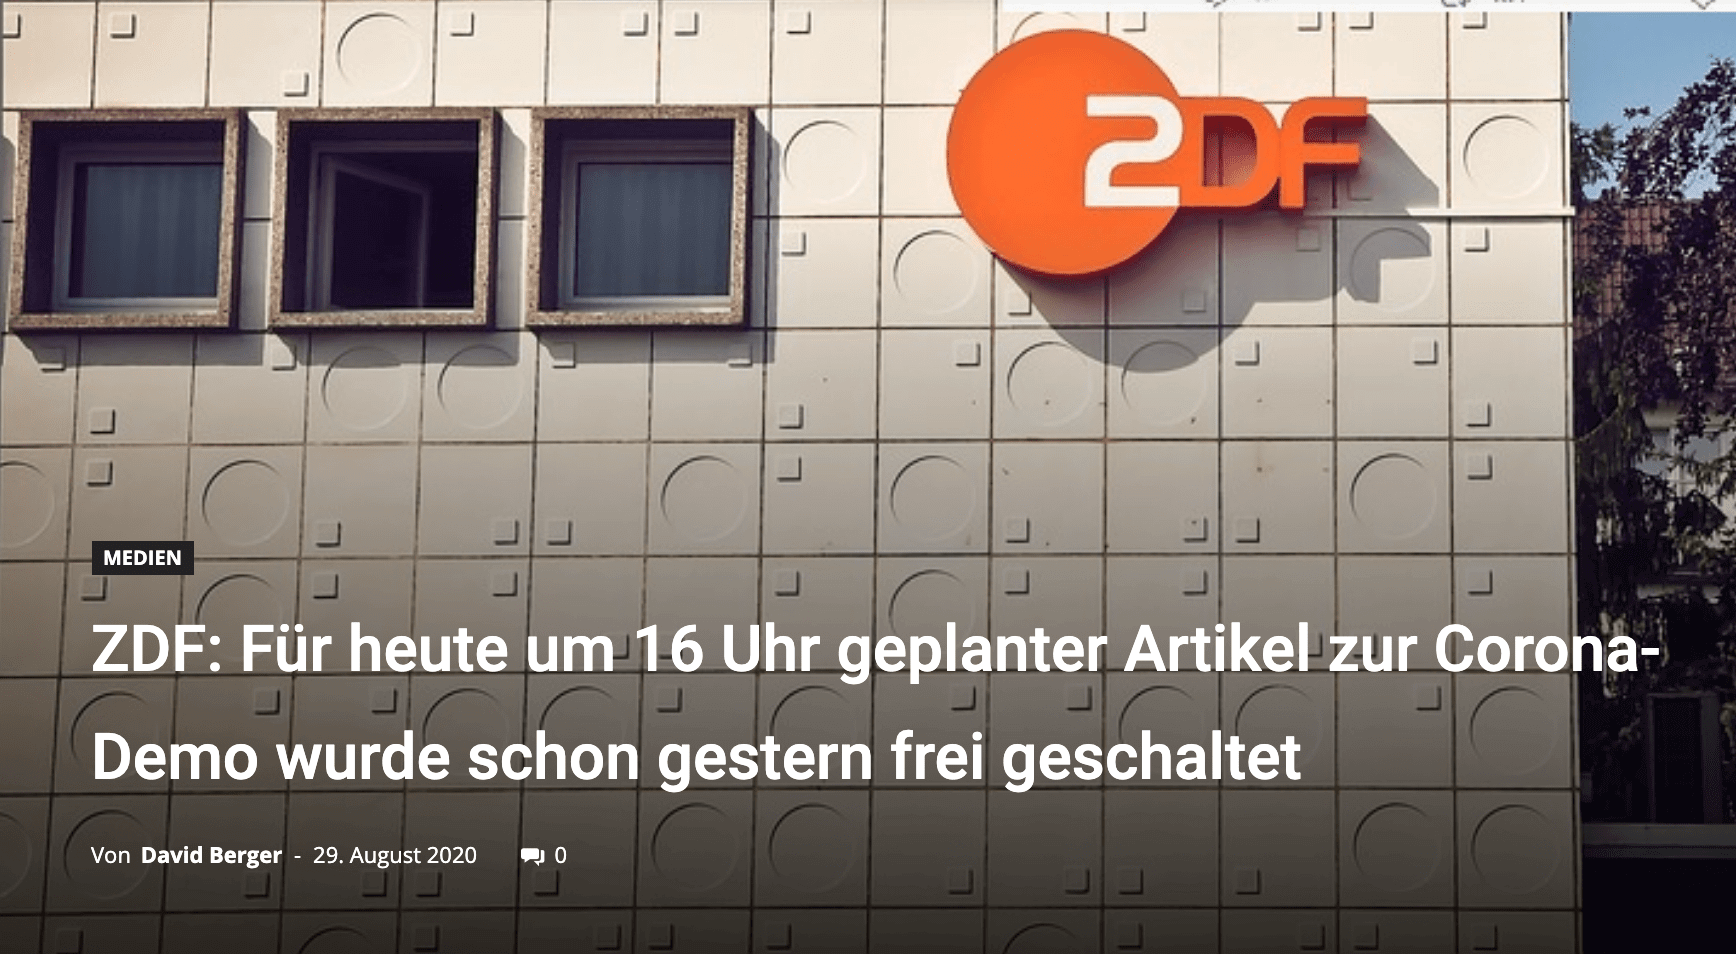 Das ZDF soll angeblich einen Text vorab veröffentlicht haben, in dem es um Gewalt bei den Corona-Demo geht. Doch bei dieser Behauptung fehlt wichtiger Kontext. Der Text bezog sich nicht auf die Demonstration in Berlin am 29. August.